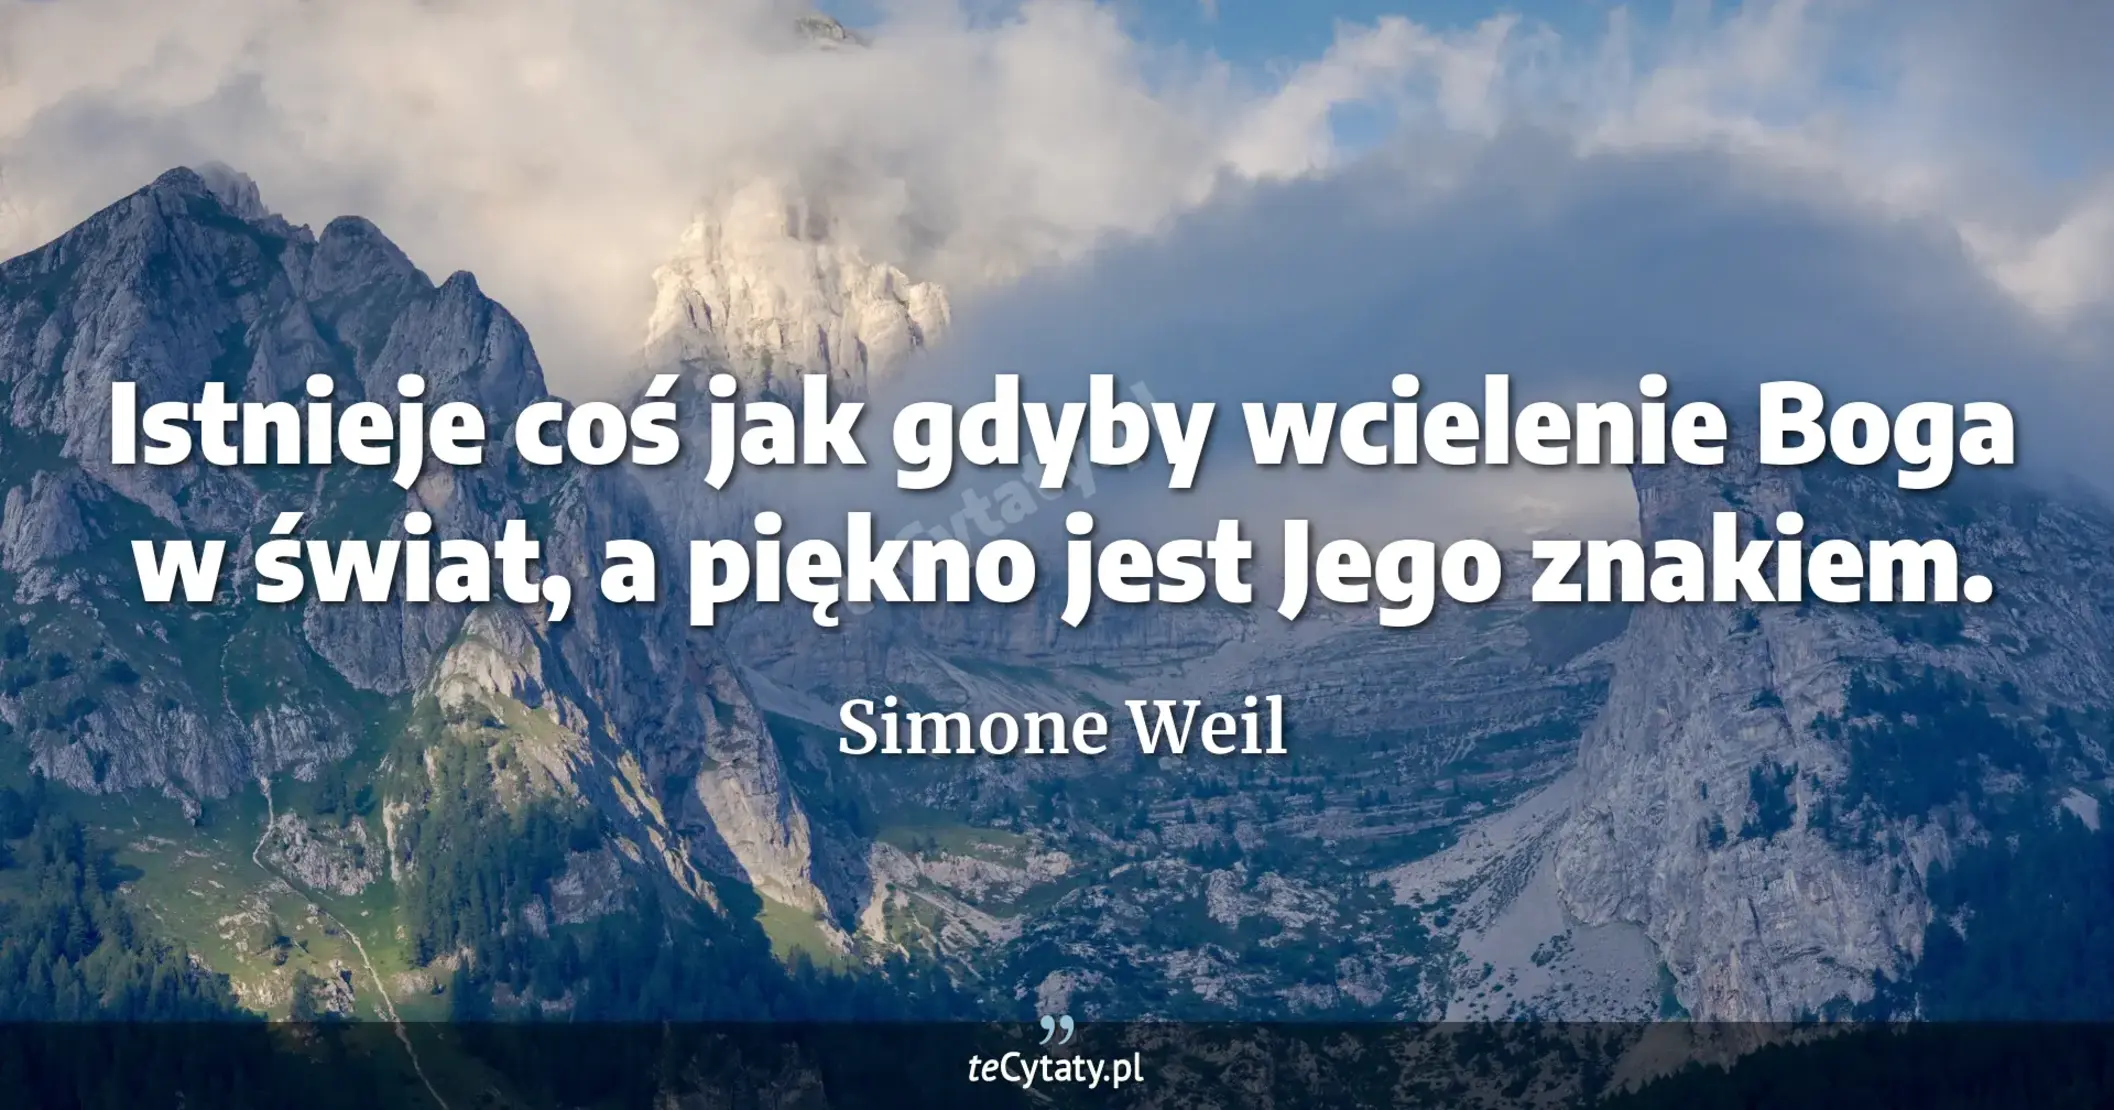 Istnieje coś jak gdyby wcielenie Boga w świat, a piękno jest Jego znakiem. - Simone Weil